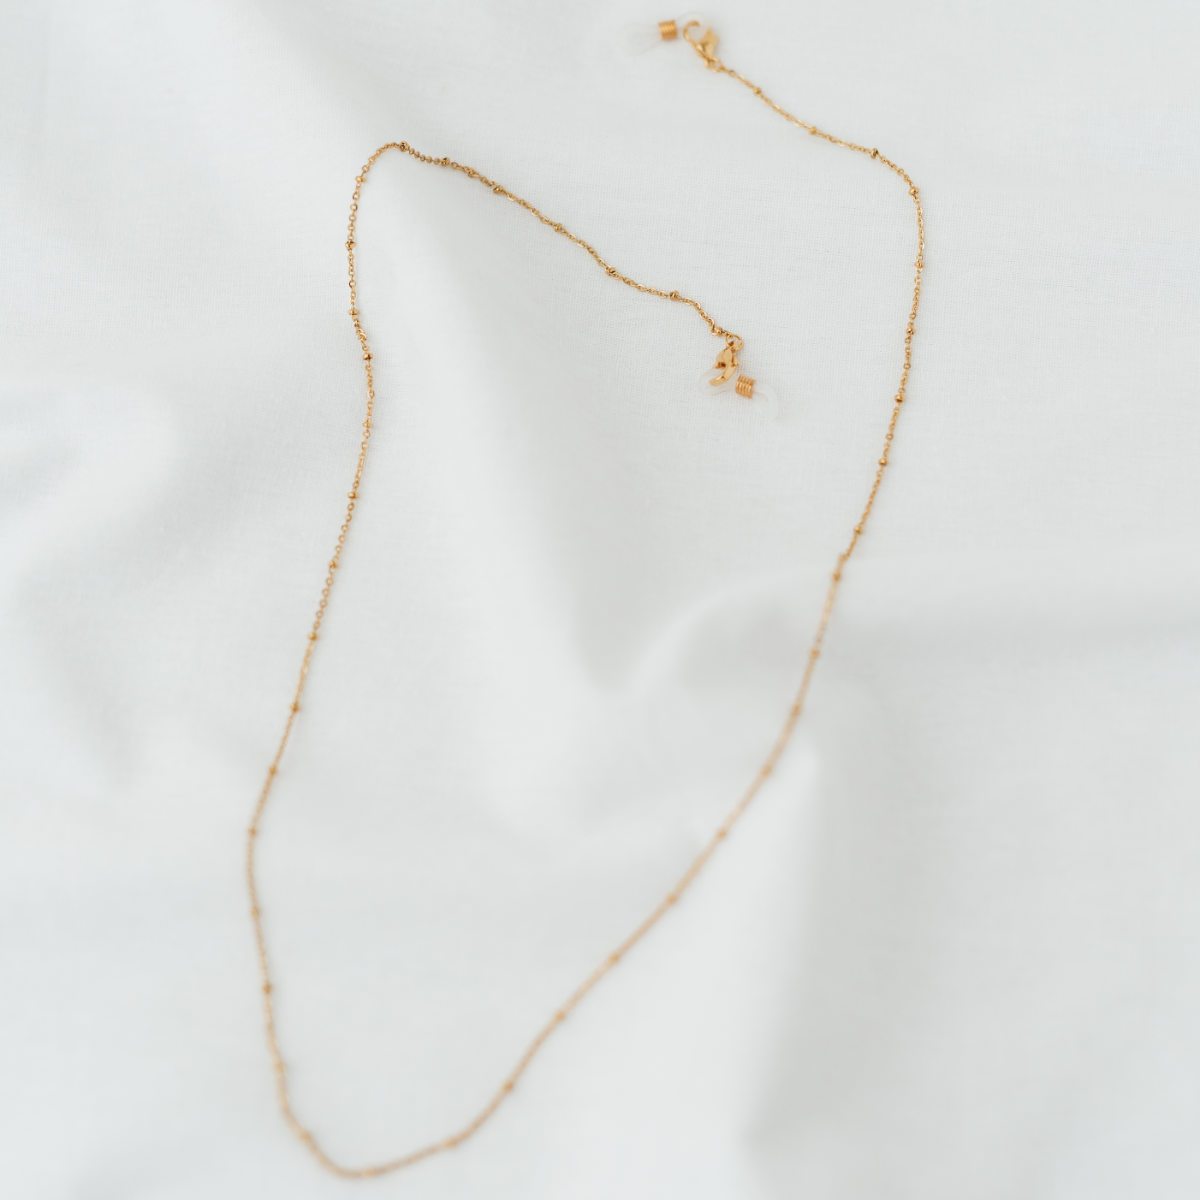 Allrounder Necklace | Accessoires für €14.99 von So Loved Manufacture